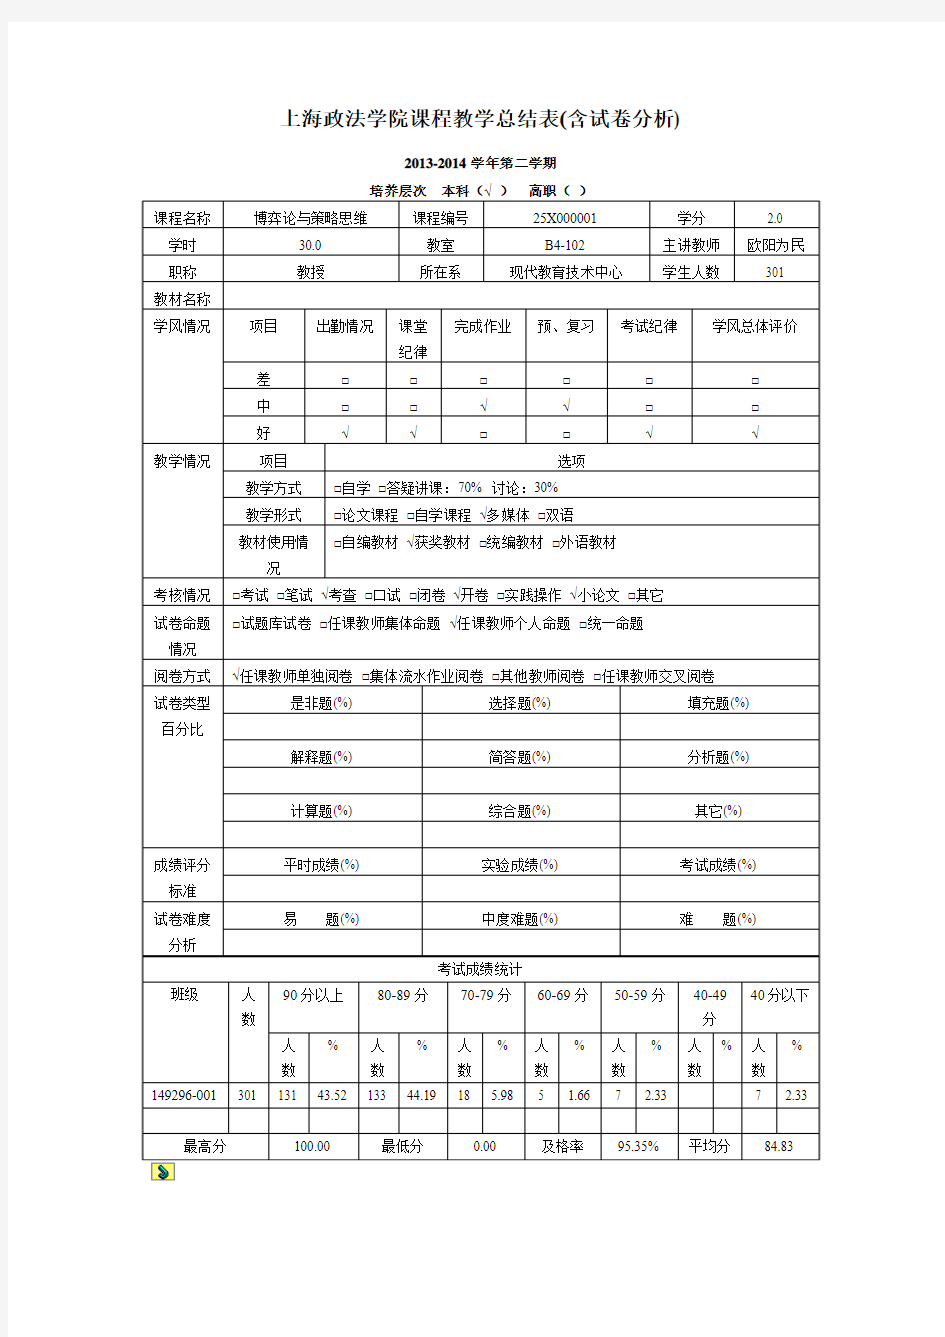 上海政法学院课程教学总结表(含试卷分析)